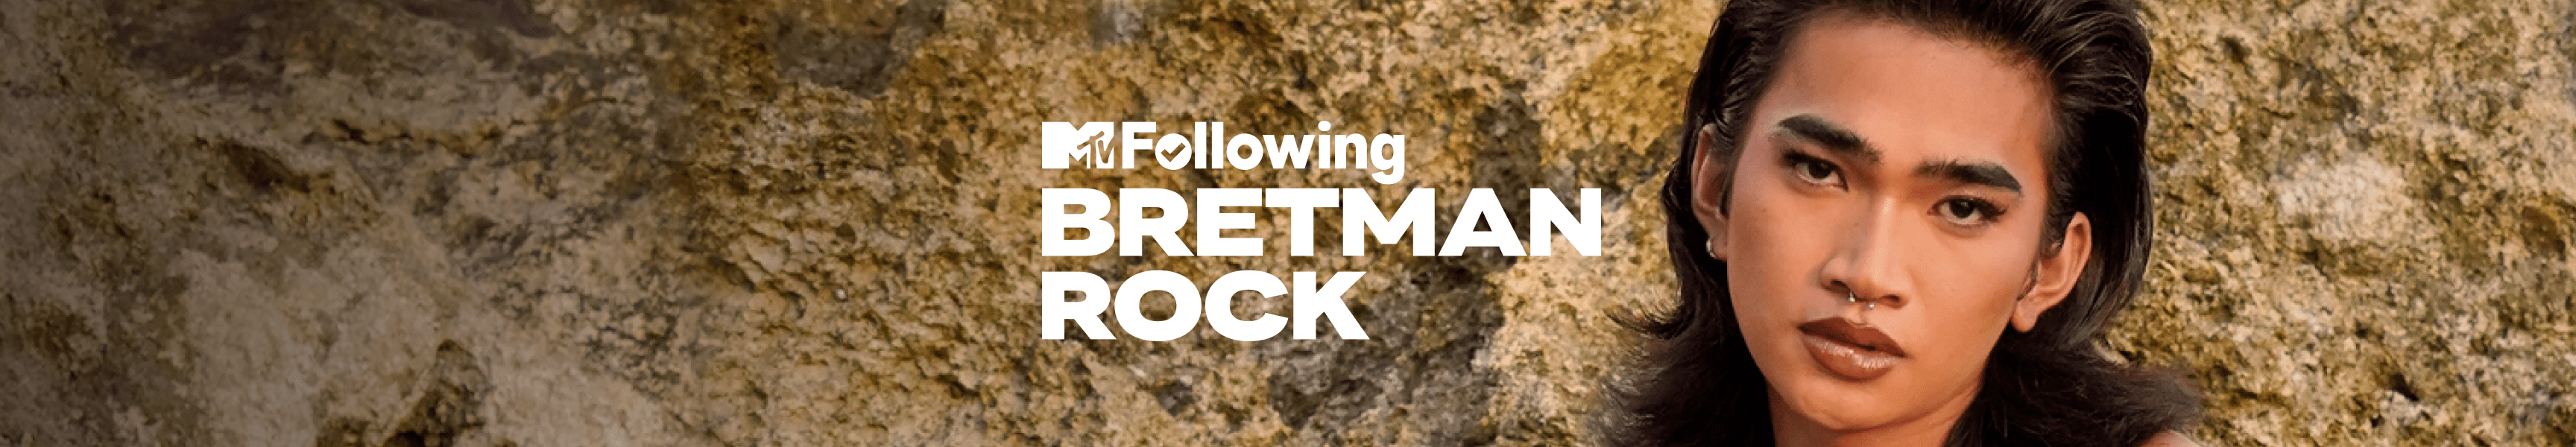 Bretman Rock